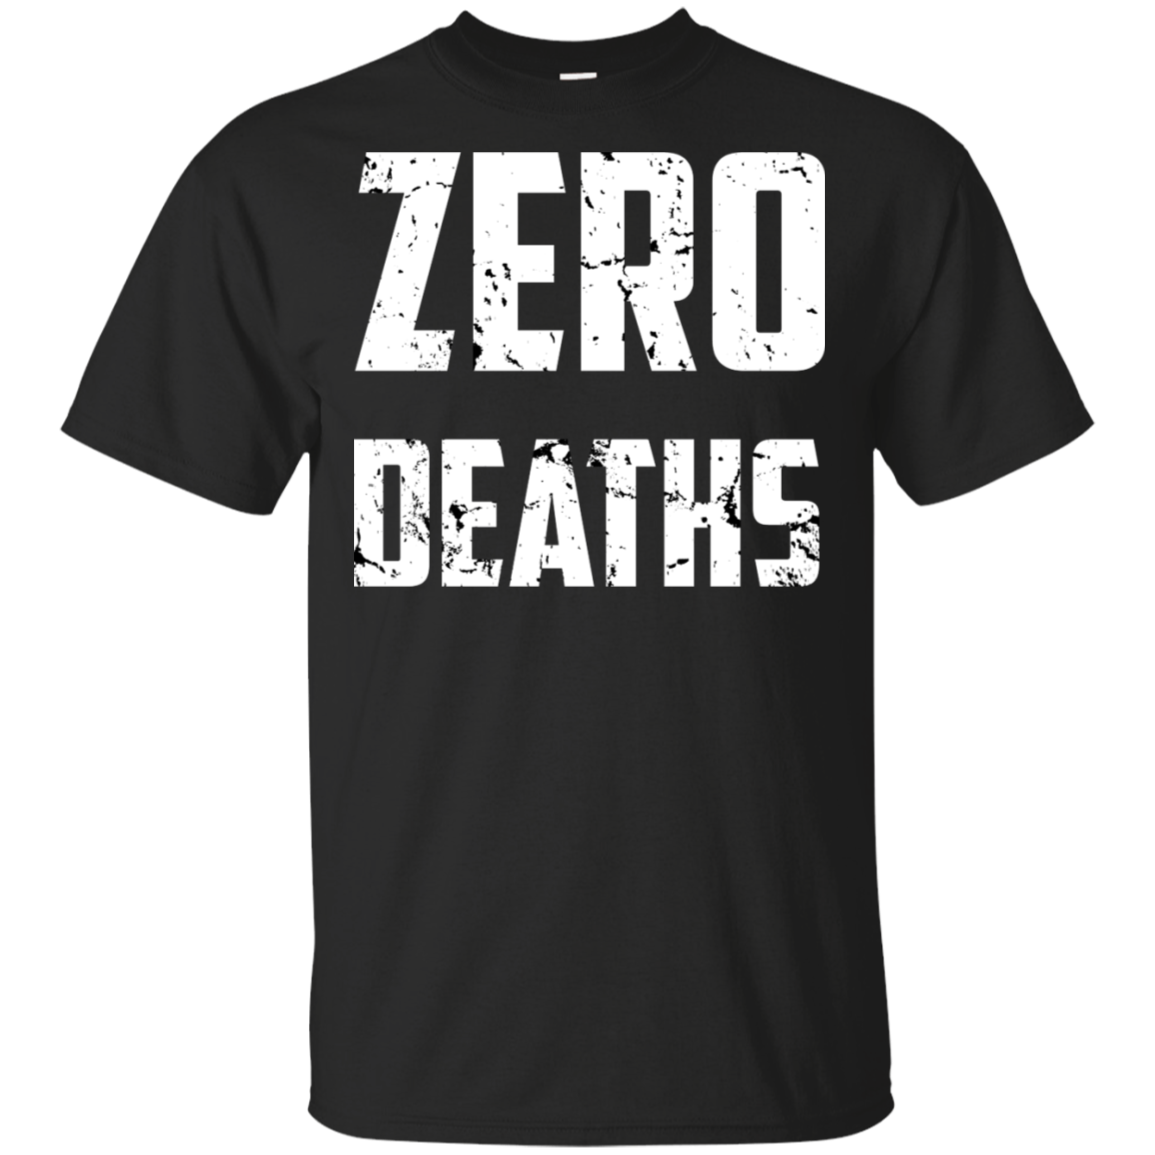 Zero Deaths